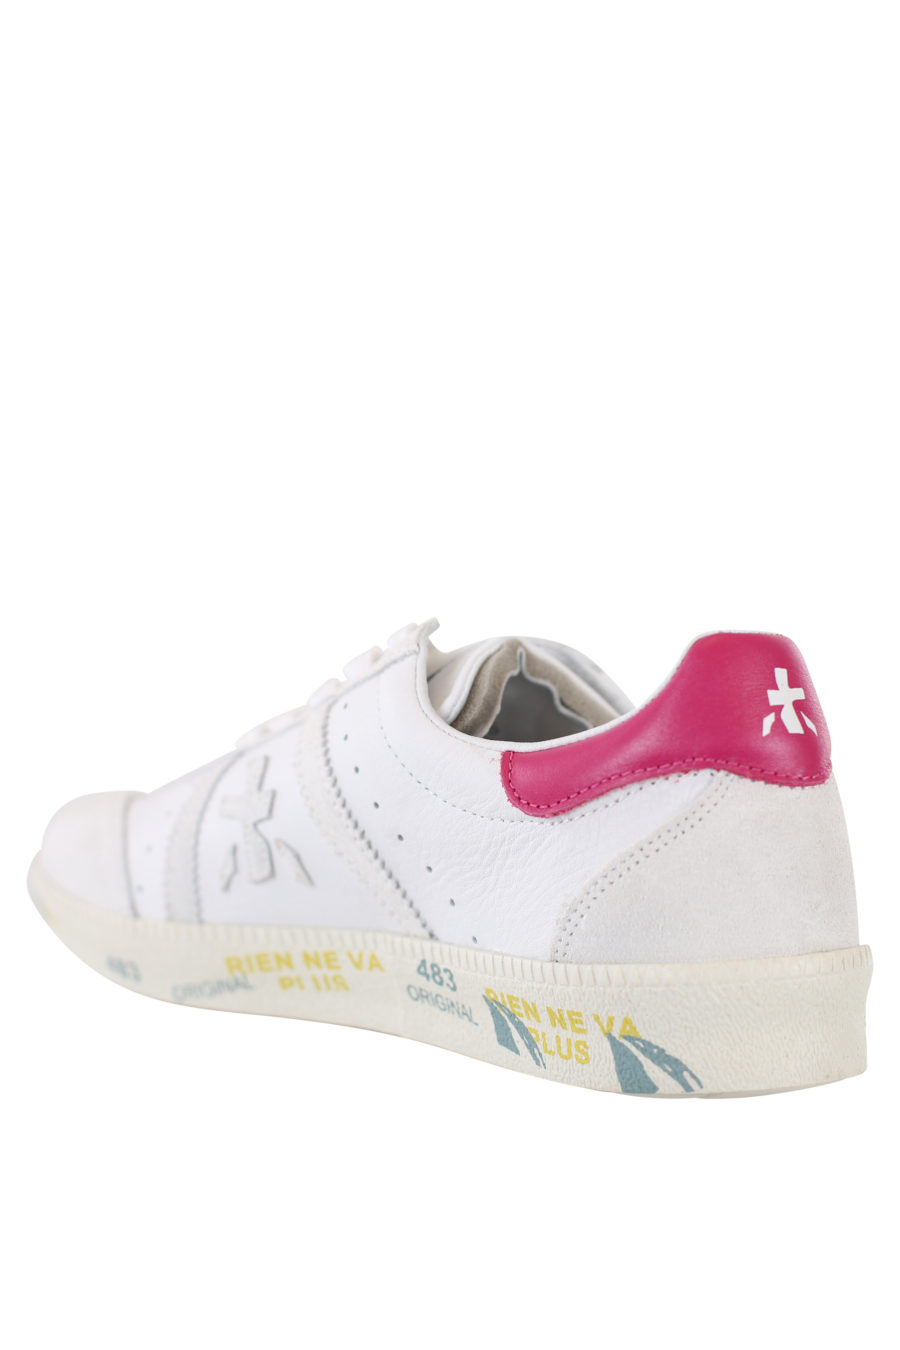 Zapatillas blancas con detalle rosa "Bonnied" - IMG 2185